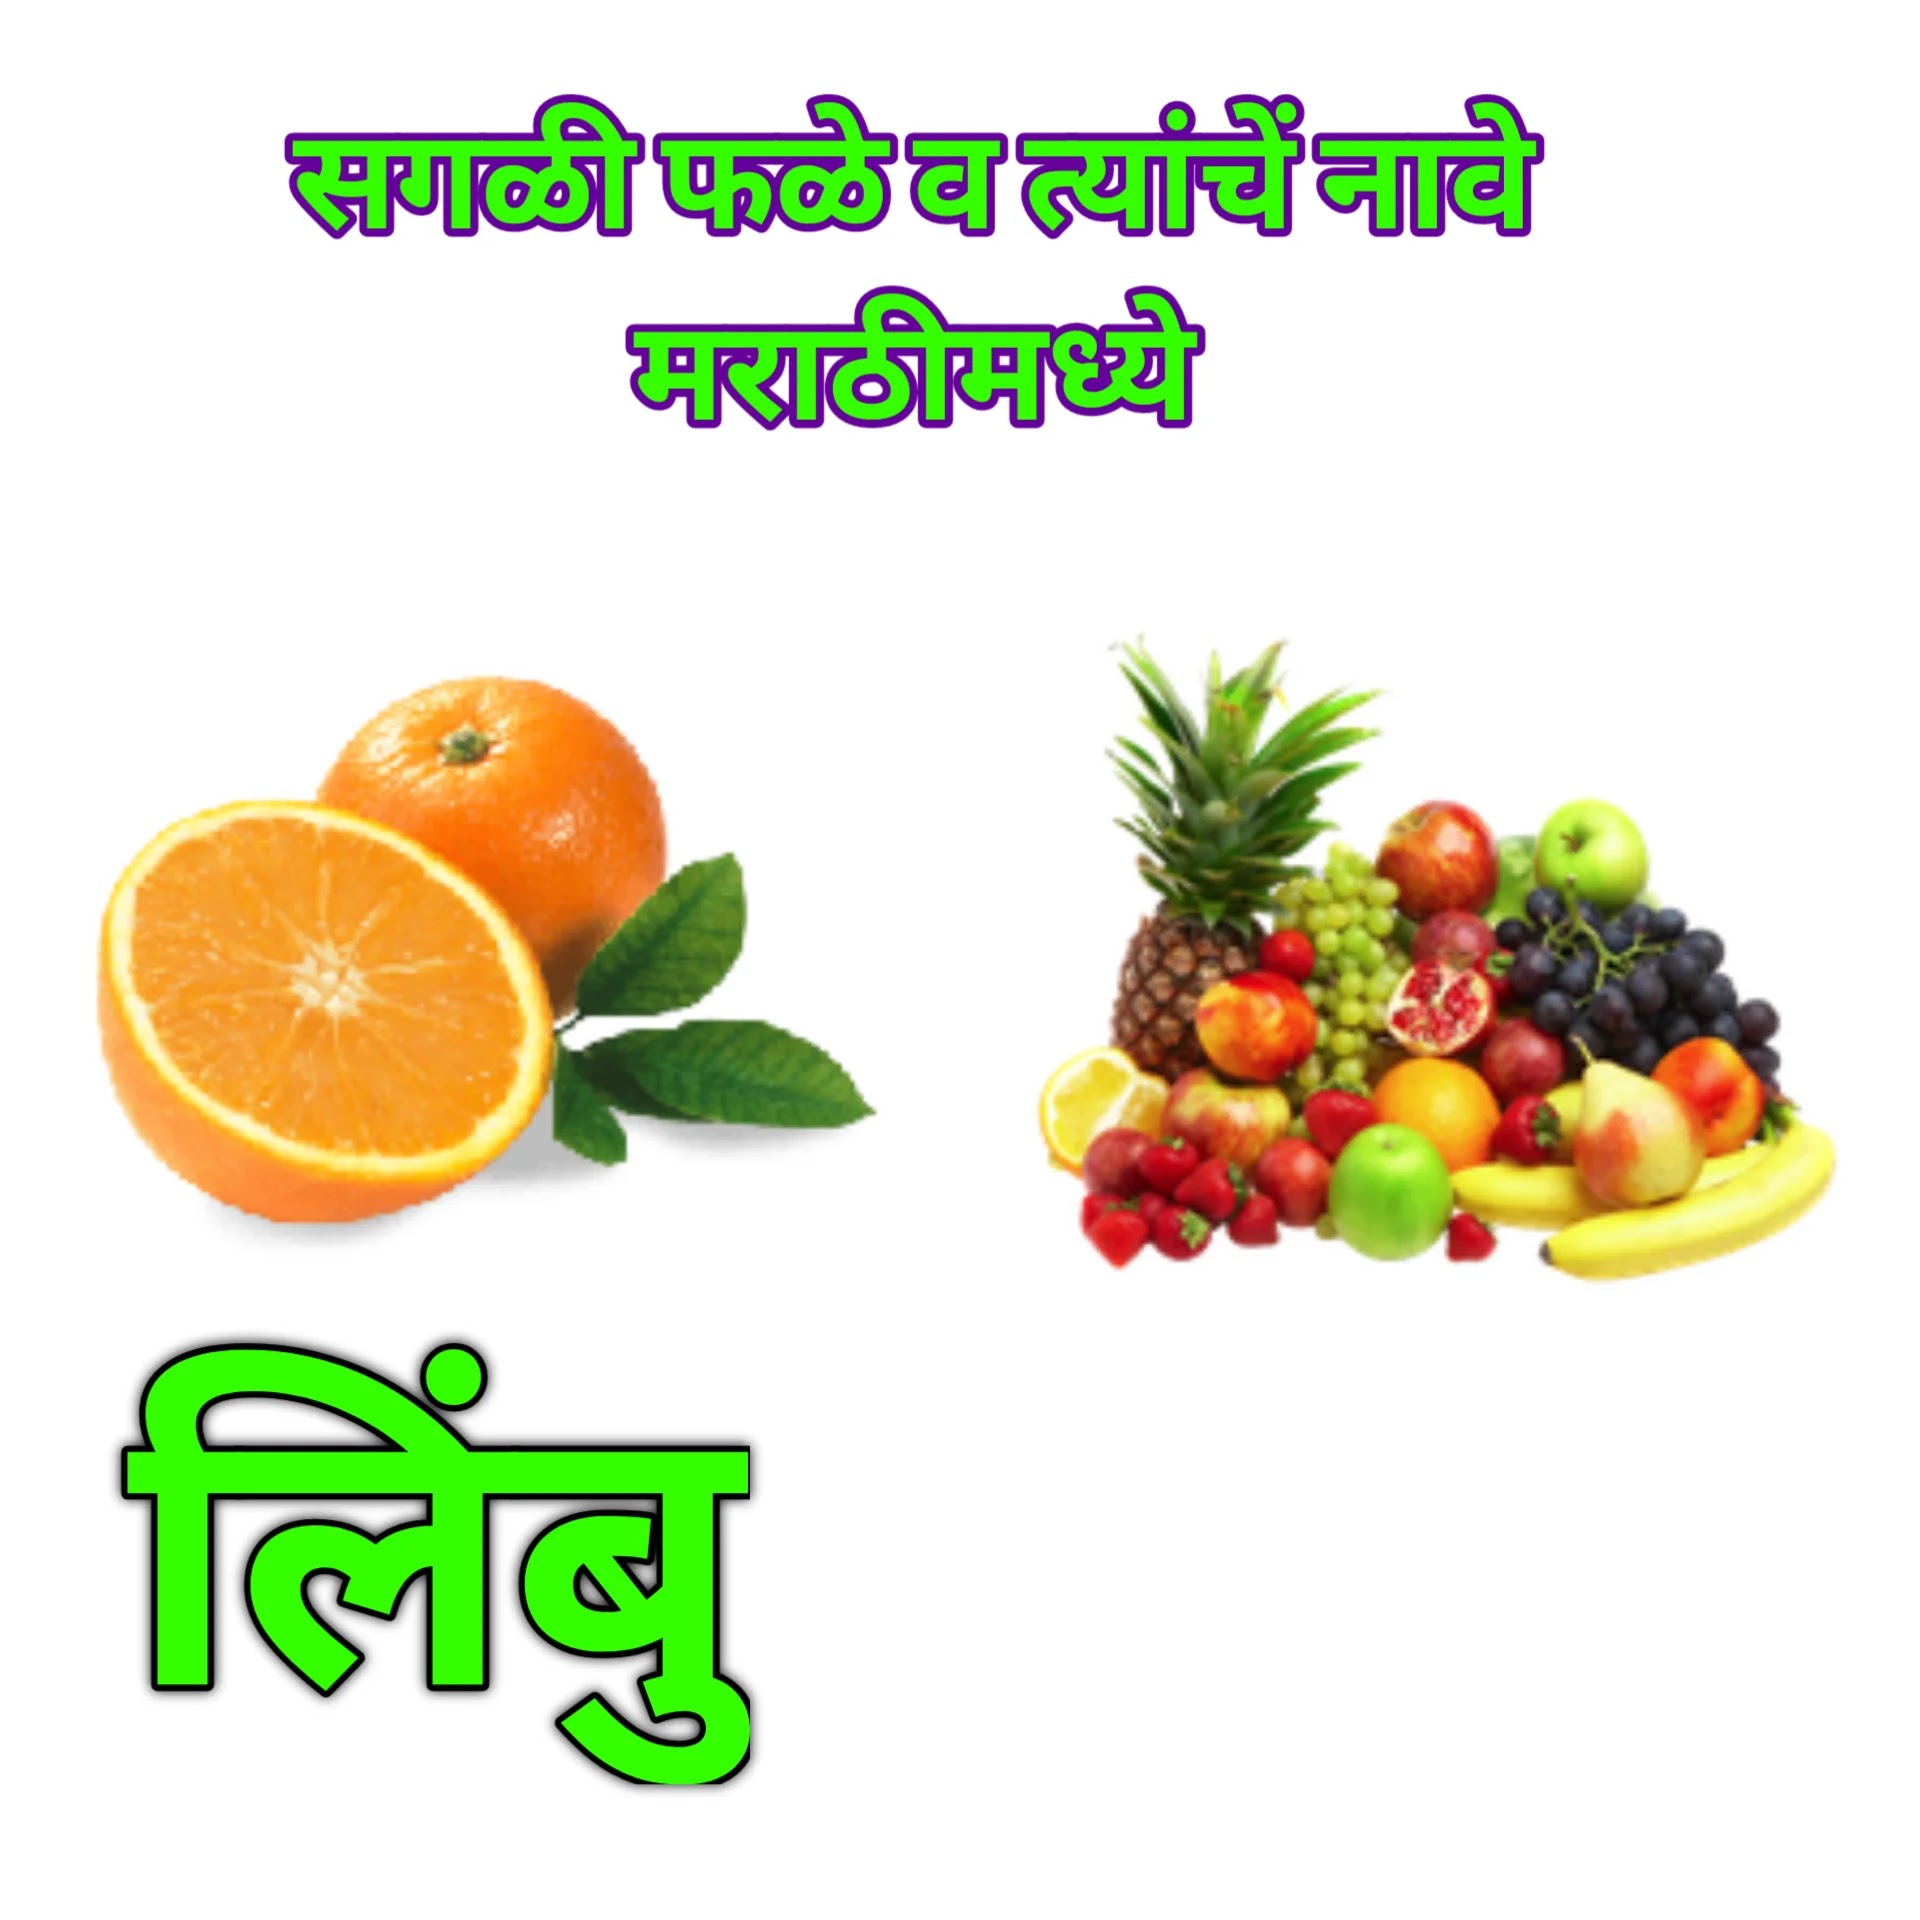 Fruits images marathi, fruits names marathi,